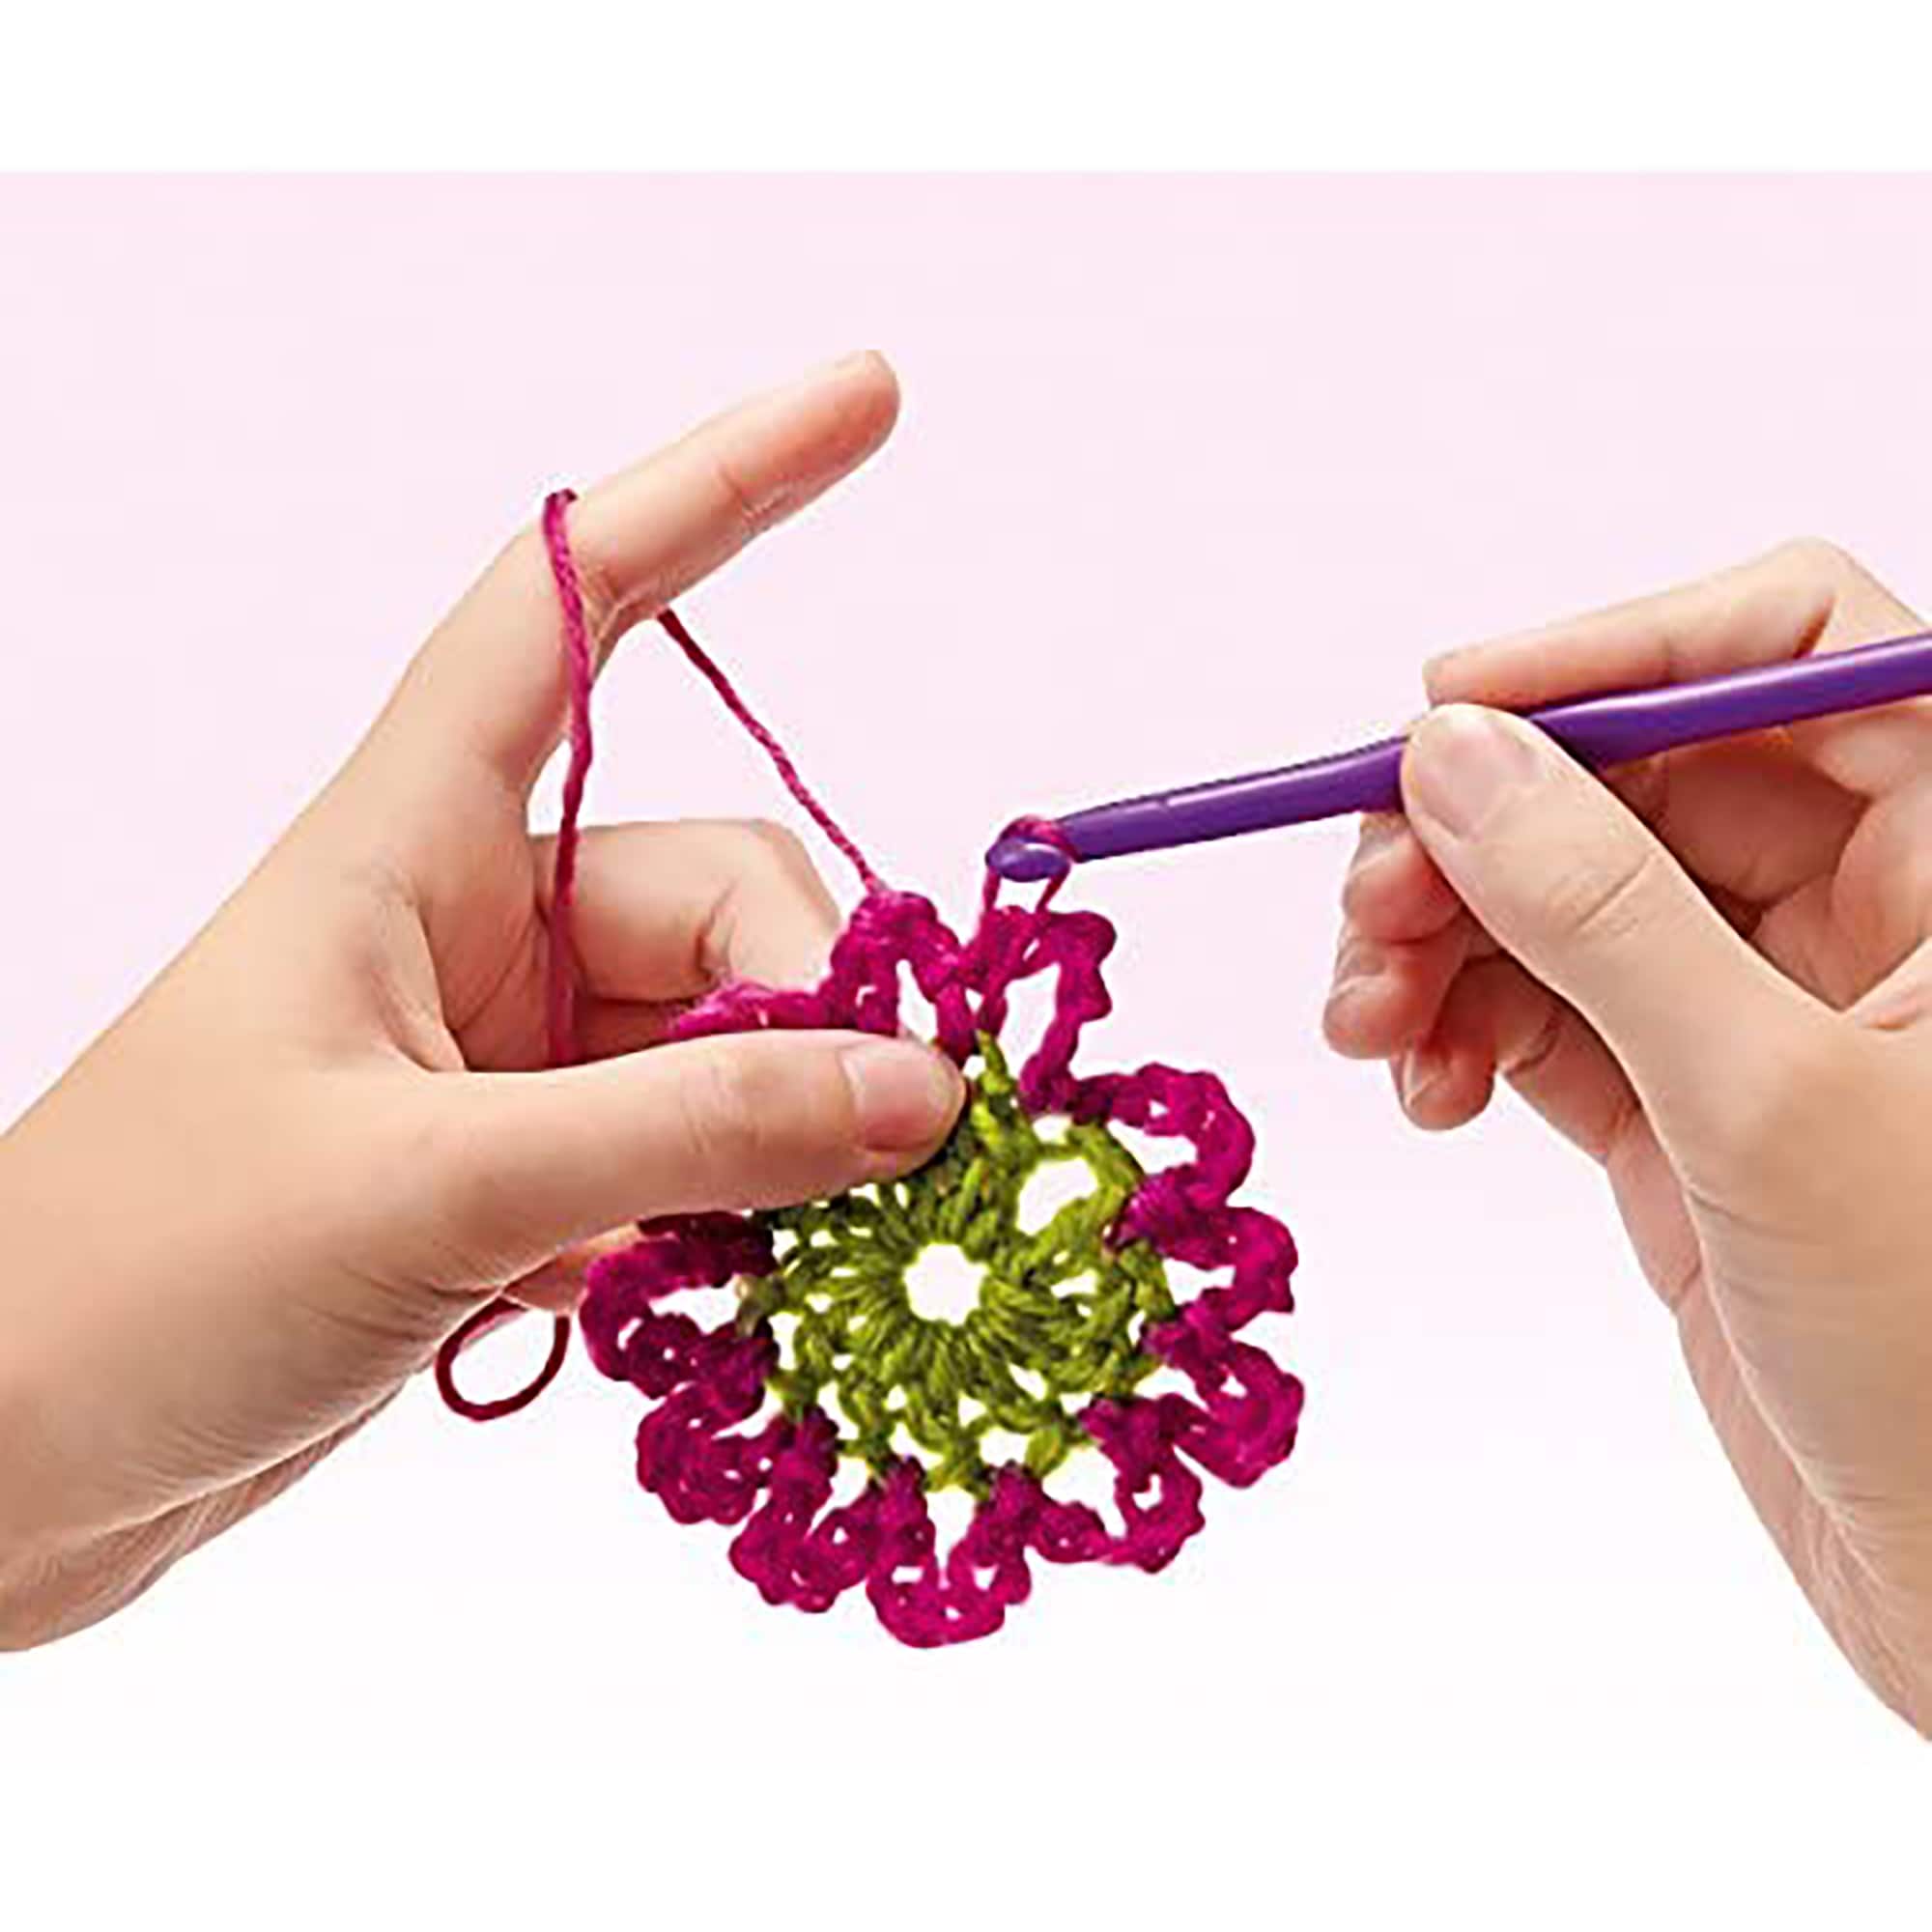 Toysmith® 4M® Easy-To-Do Crochet Kit